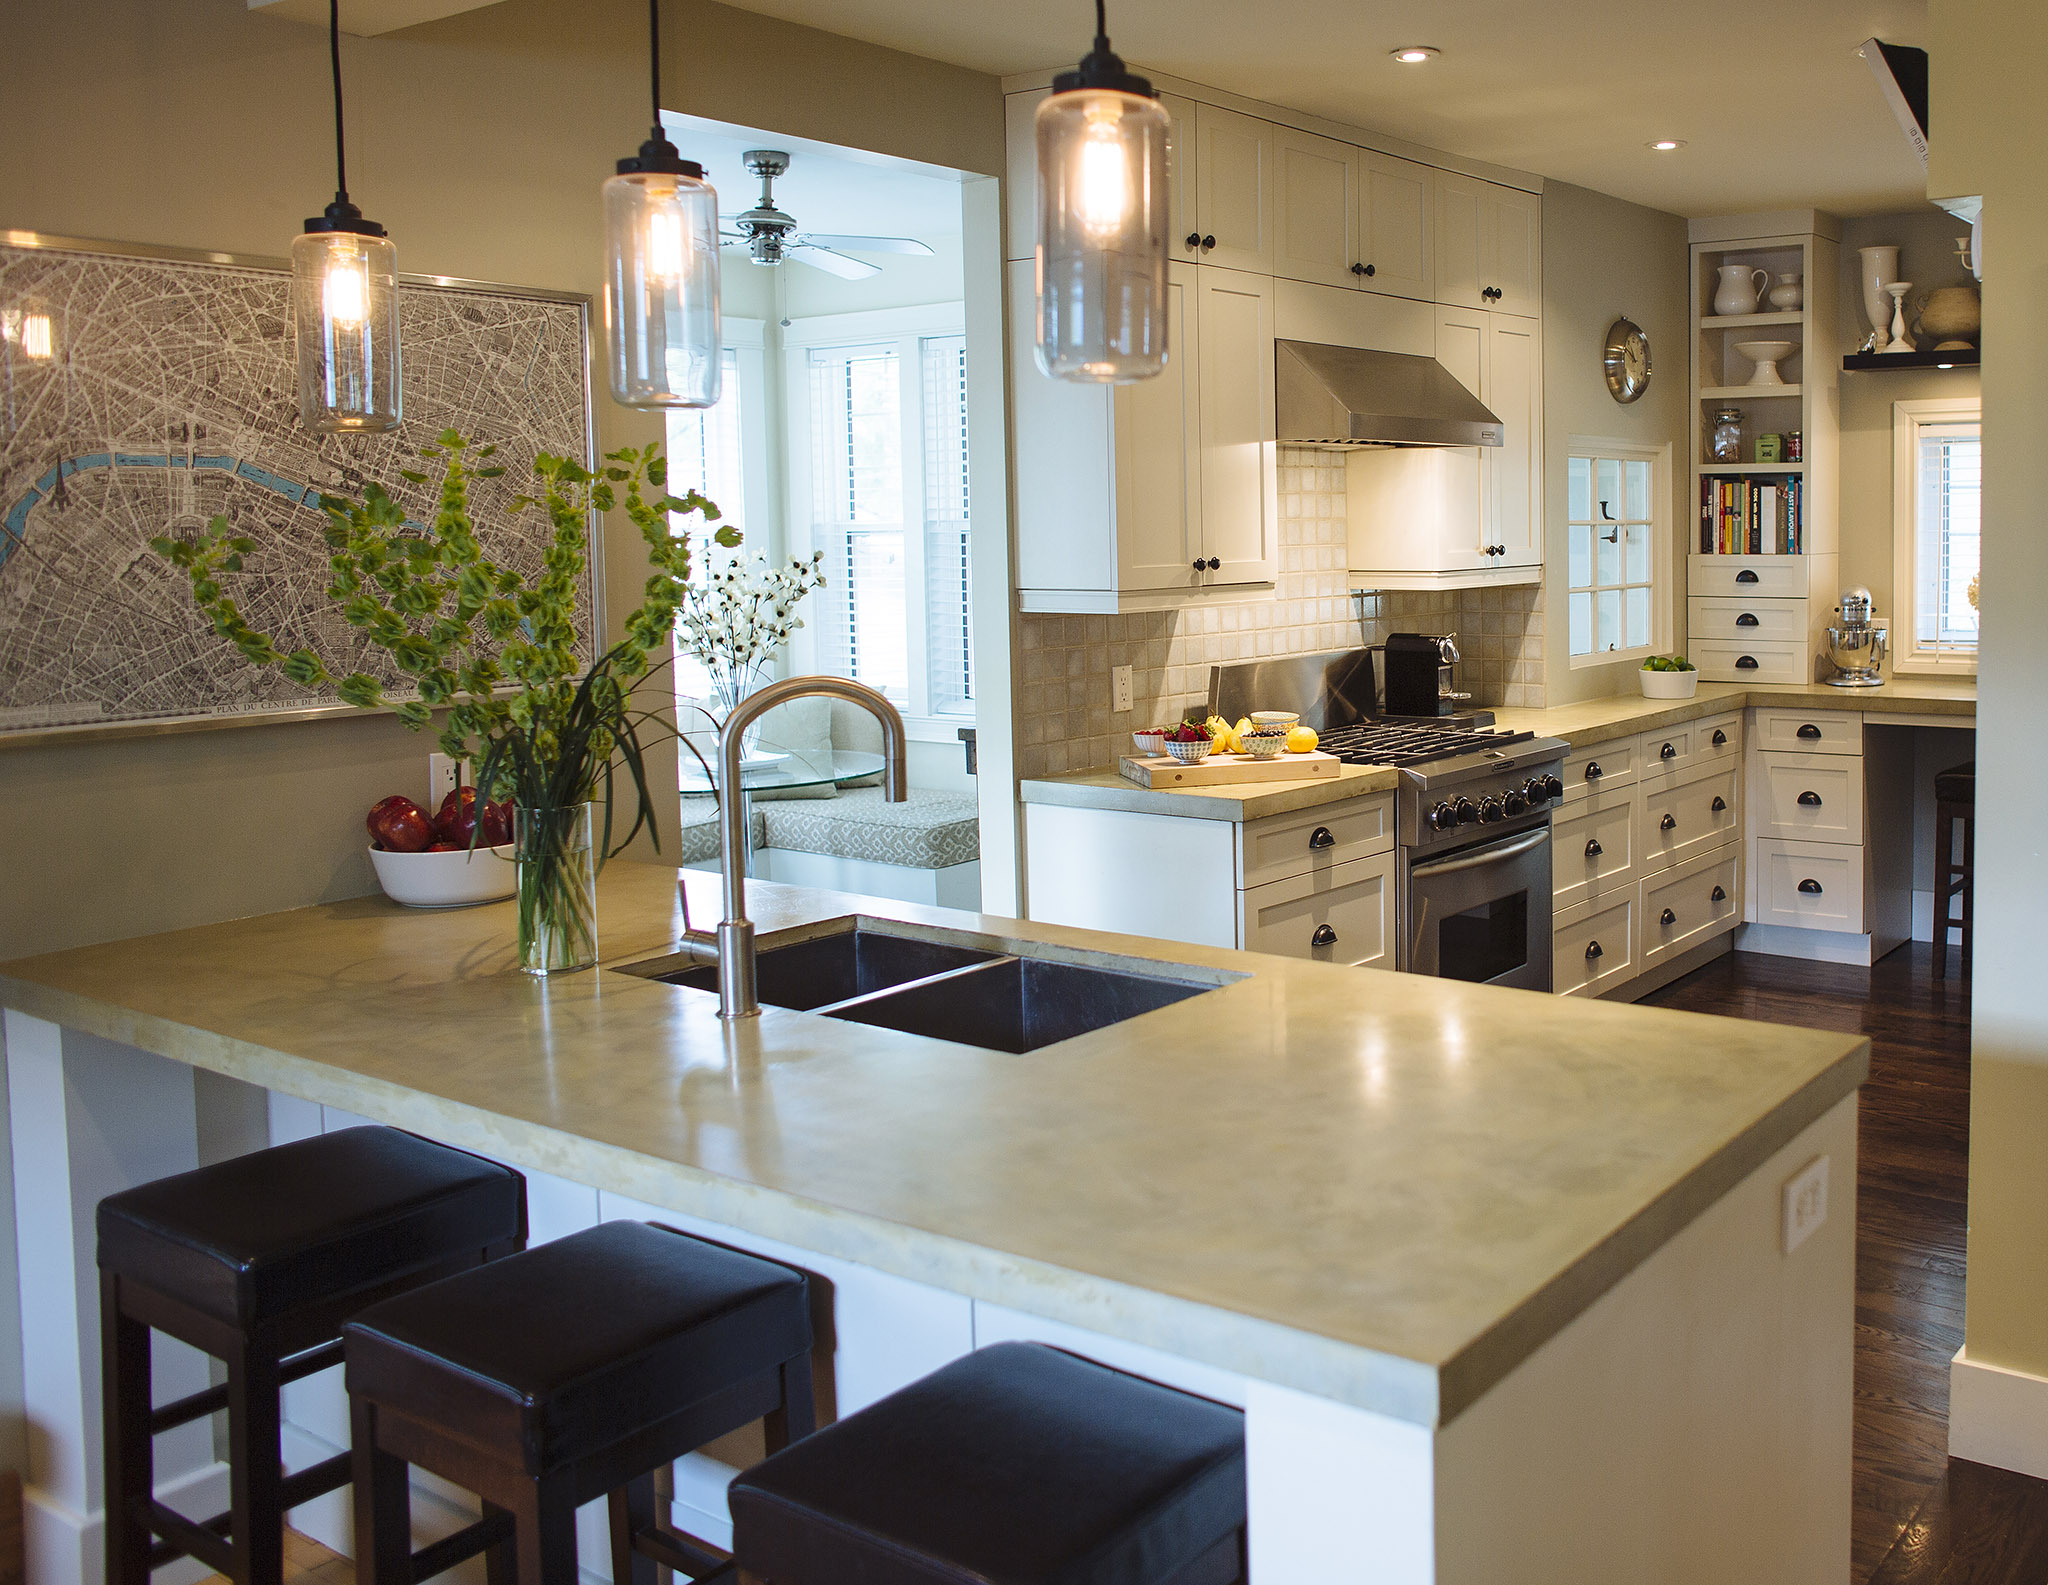 Kitchen Design: Island or Peninsula? — GreenSlade Bath | Kitchen | Details